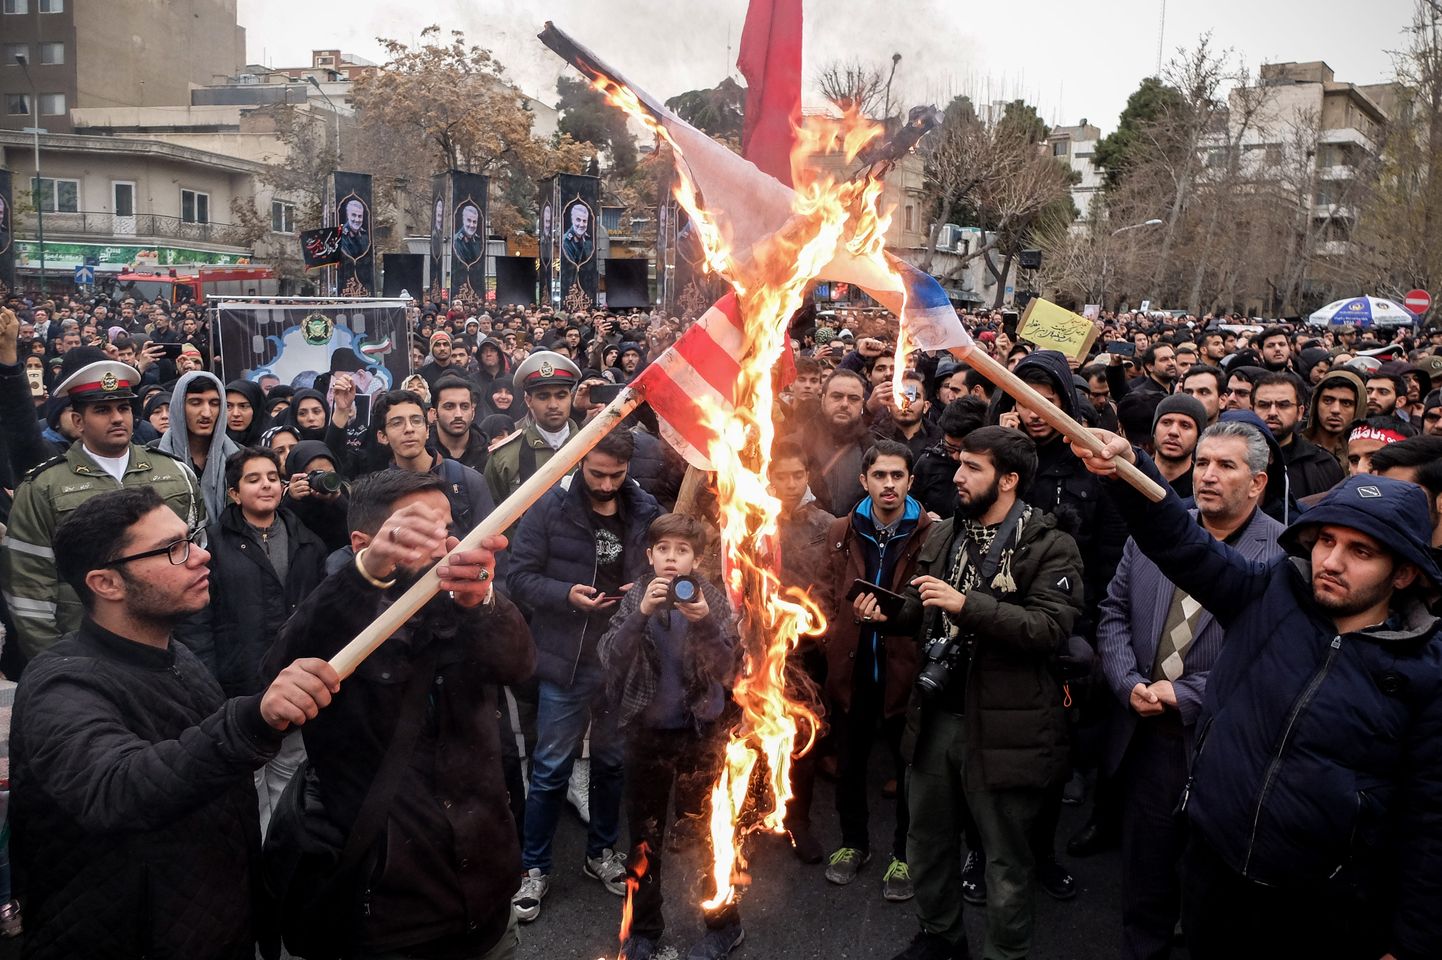 Iraanlased põletamas USA ja Iisraeli lippe pärast USA raketirünnakut, milles hukkus Iraani kindral Qasem Soleimani.